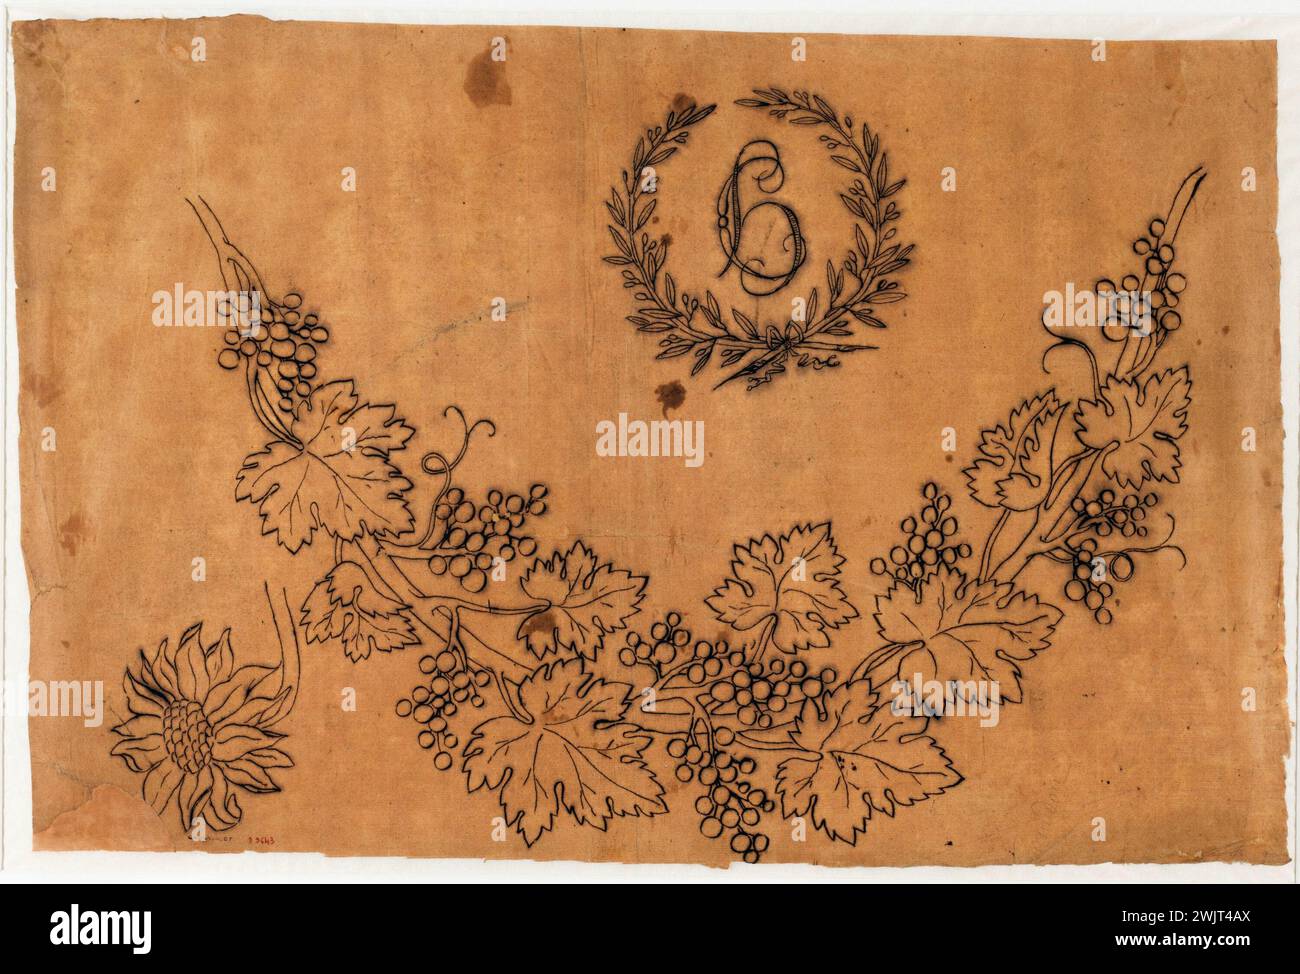 Guillaume Boichot (1735-1814). Gemüsemuster mit verflochtenen C- und H-Buchstaben. Feder und Tinte von China auf braunem Papier, 1735-1815. Paris, Carnavalet Museum. 79254-17 ZEICHNUNG Stockfoto